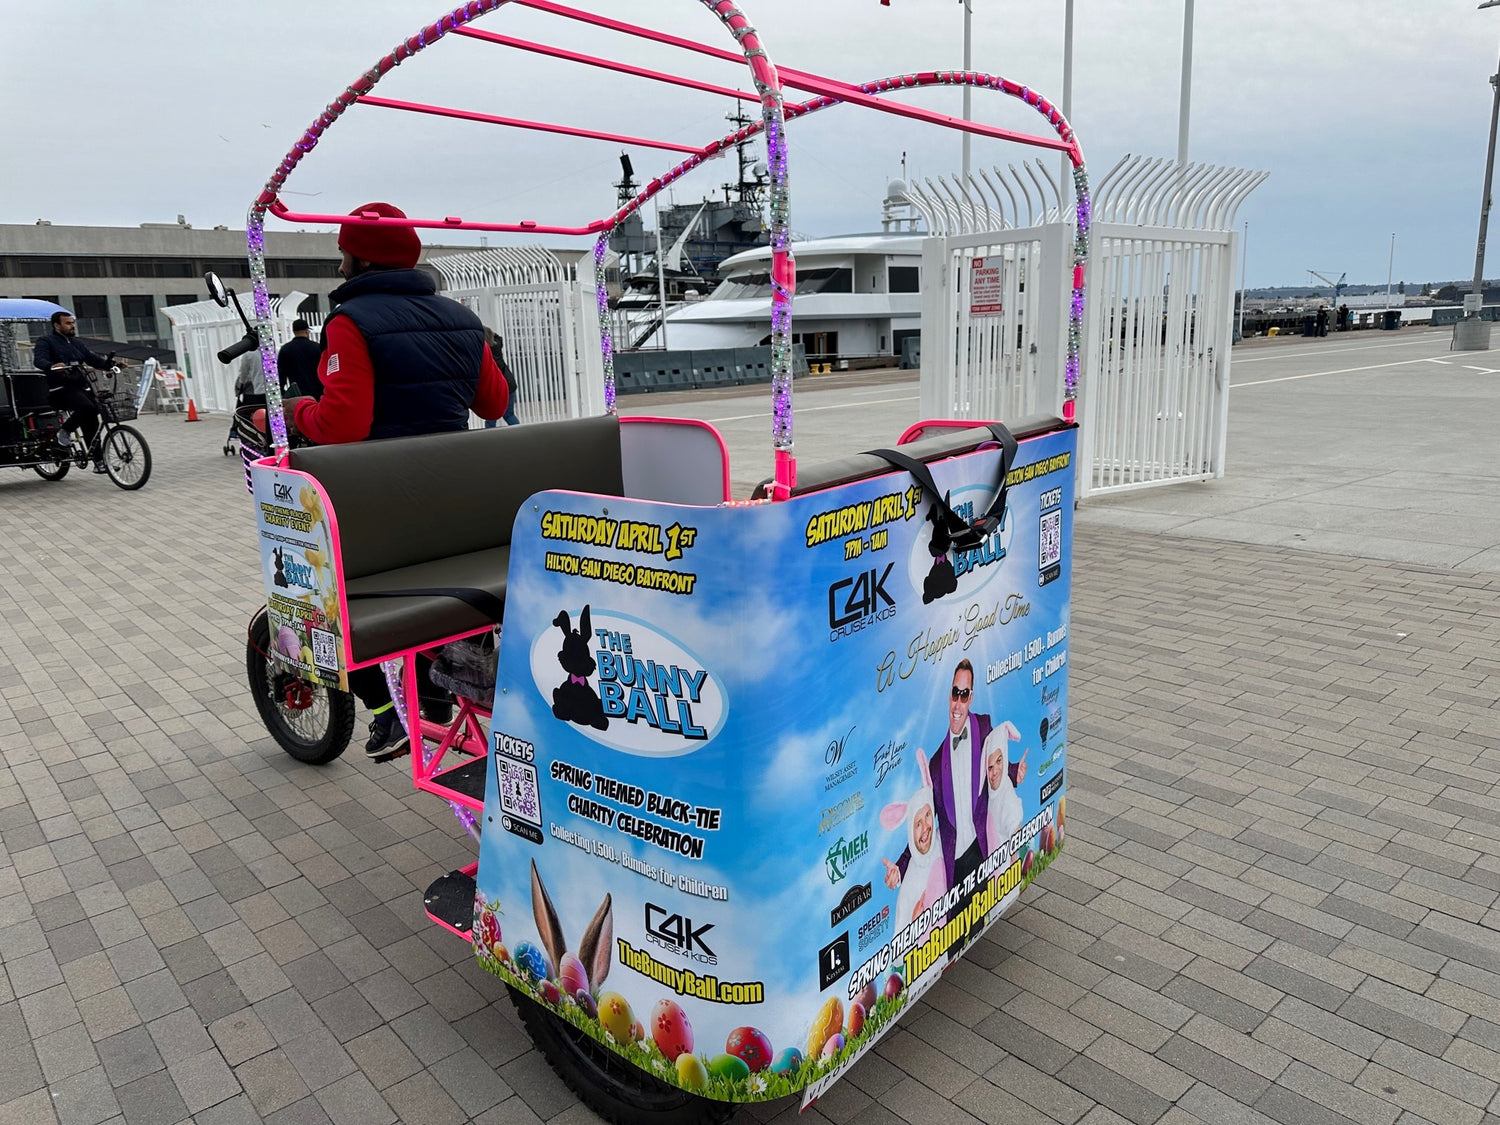 Electric Pedicabs vs Golf carts